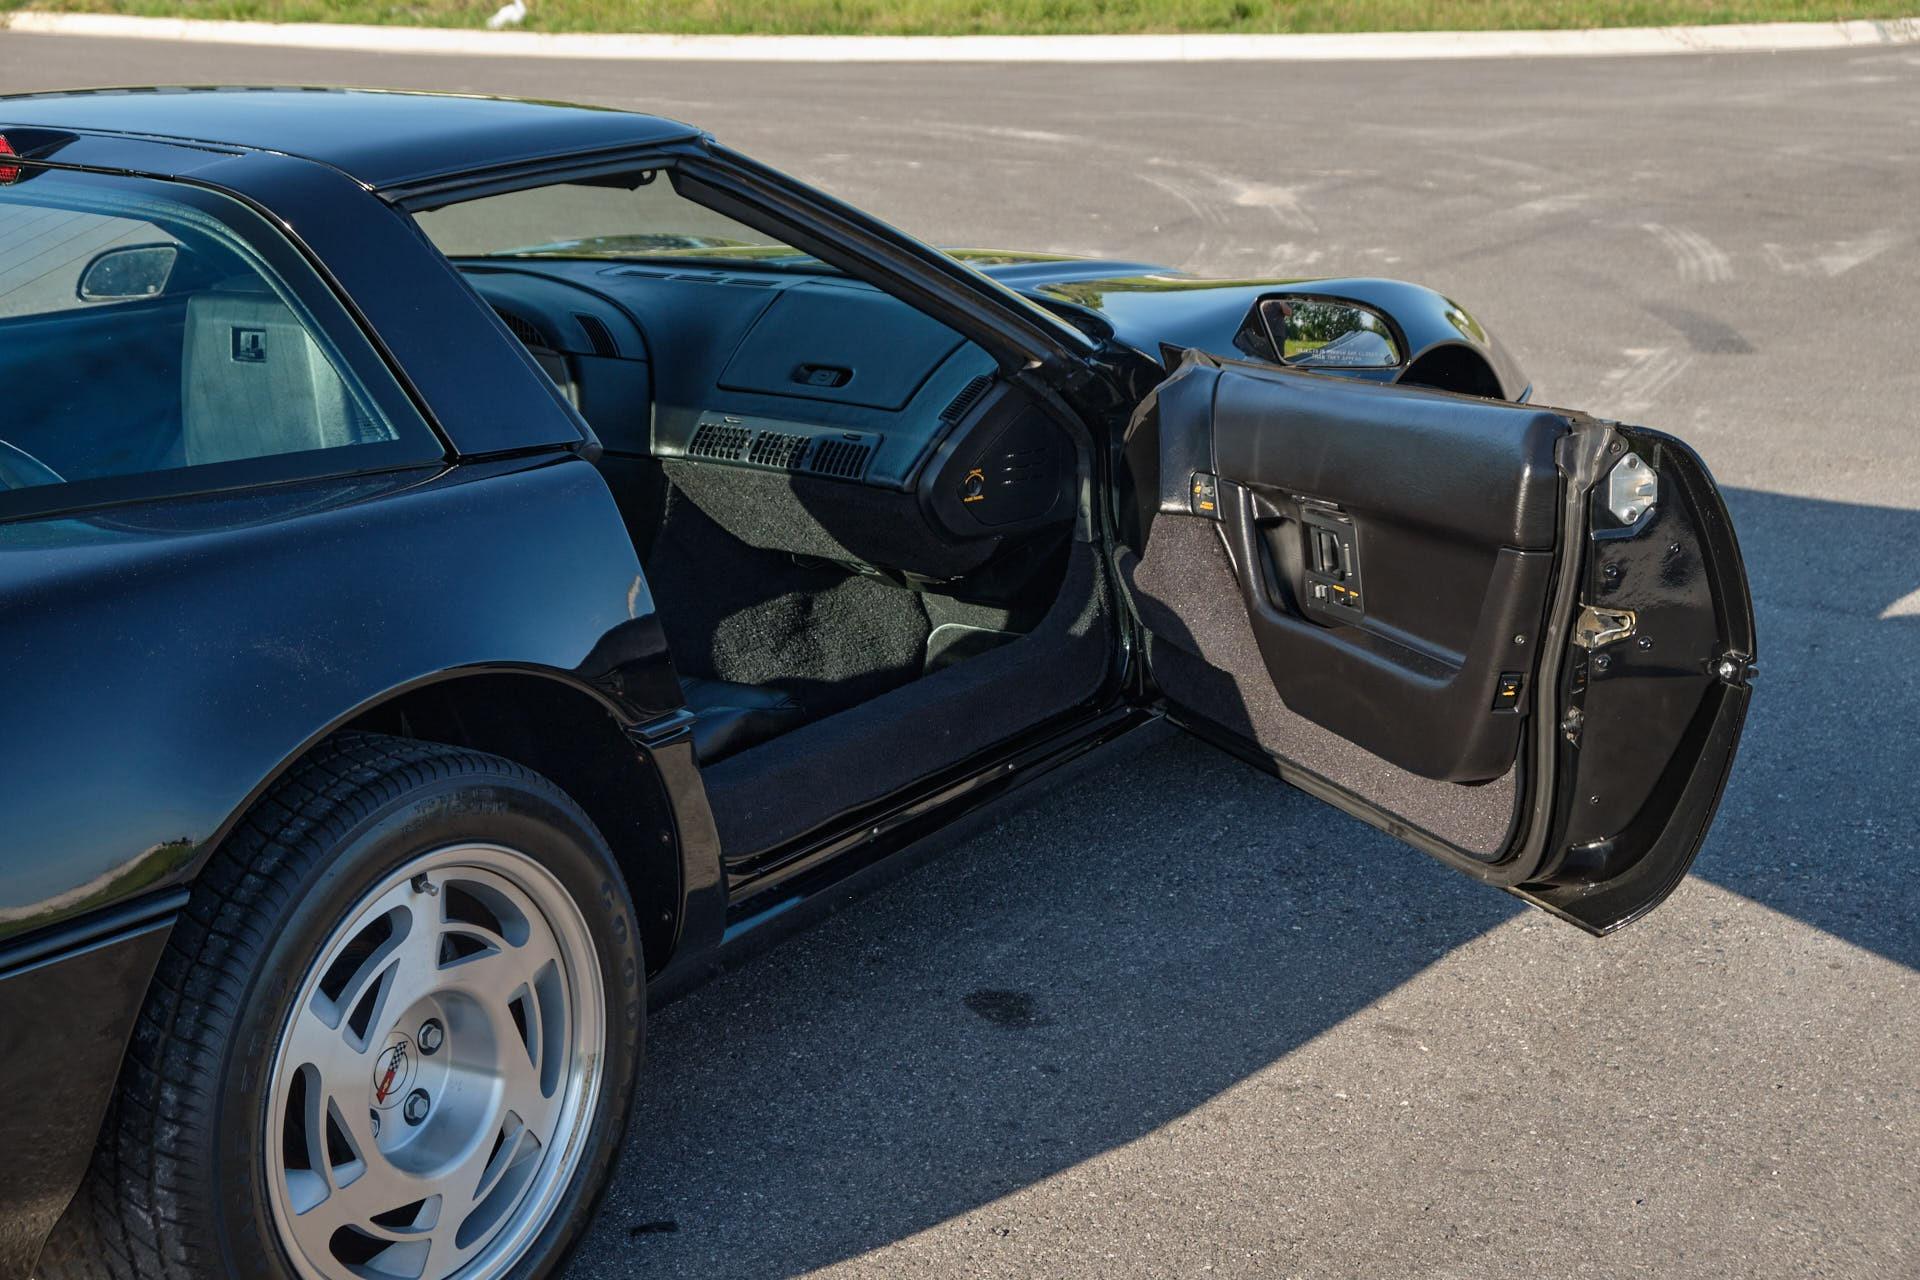 1990 CHEVROLET Corvette Coupe - $49,990